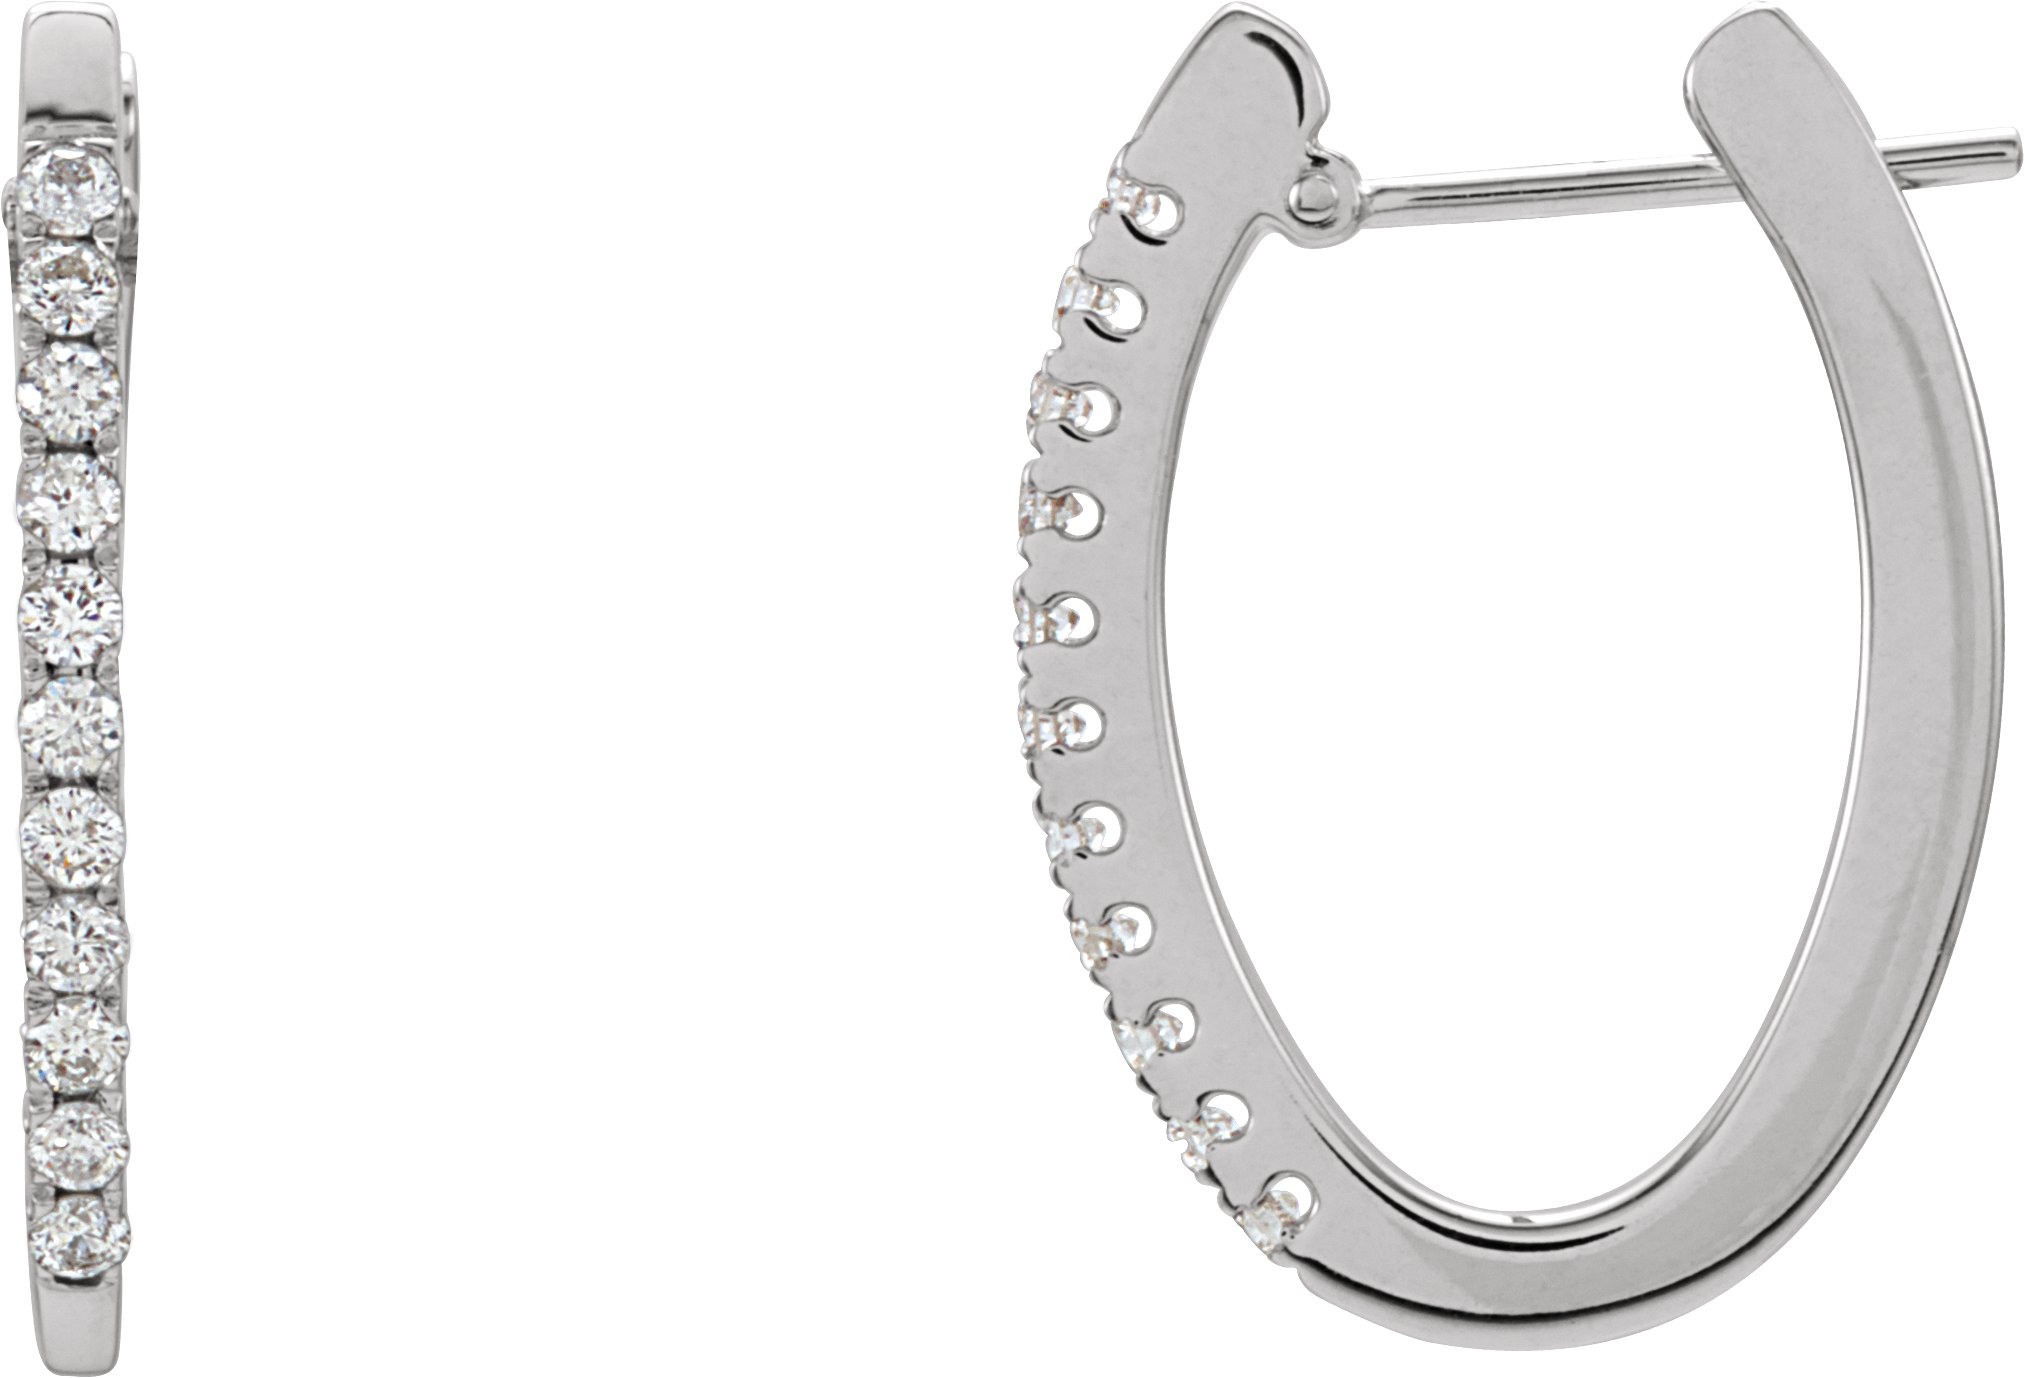 14K White 20 mm 1/3 CTW Natural Diamond Hoop Earrings